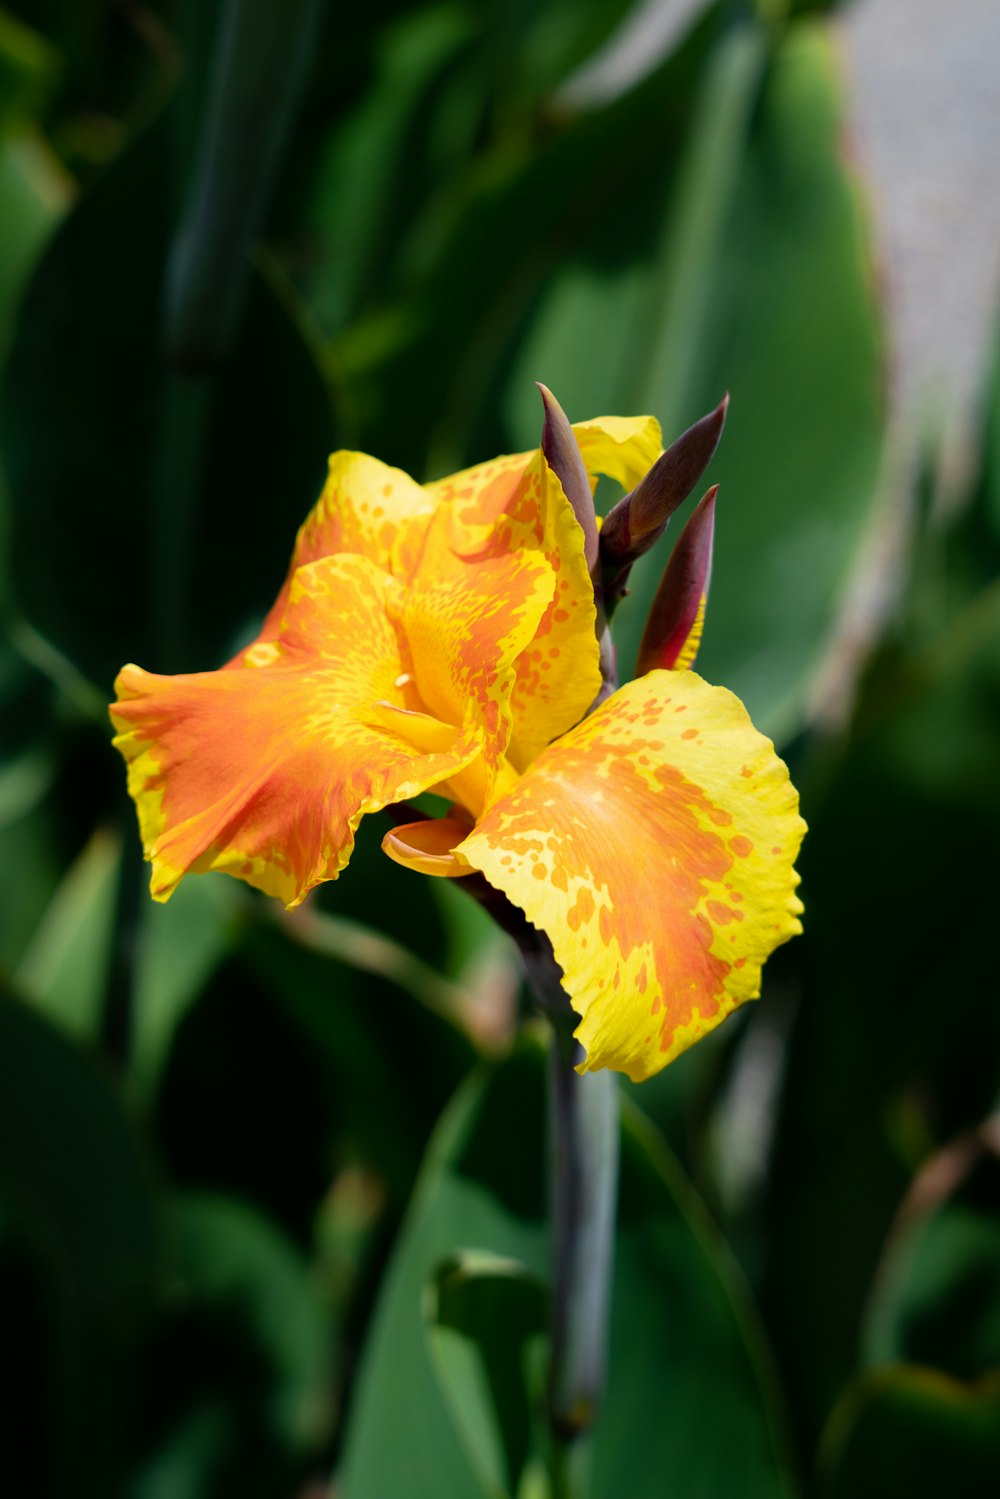 Nahaufnahme einer gelben und orangefarbenen Blume